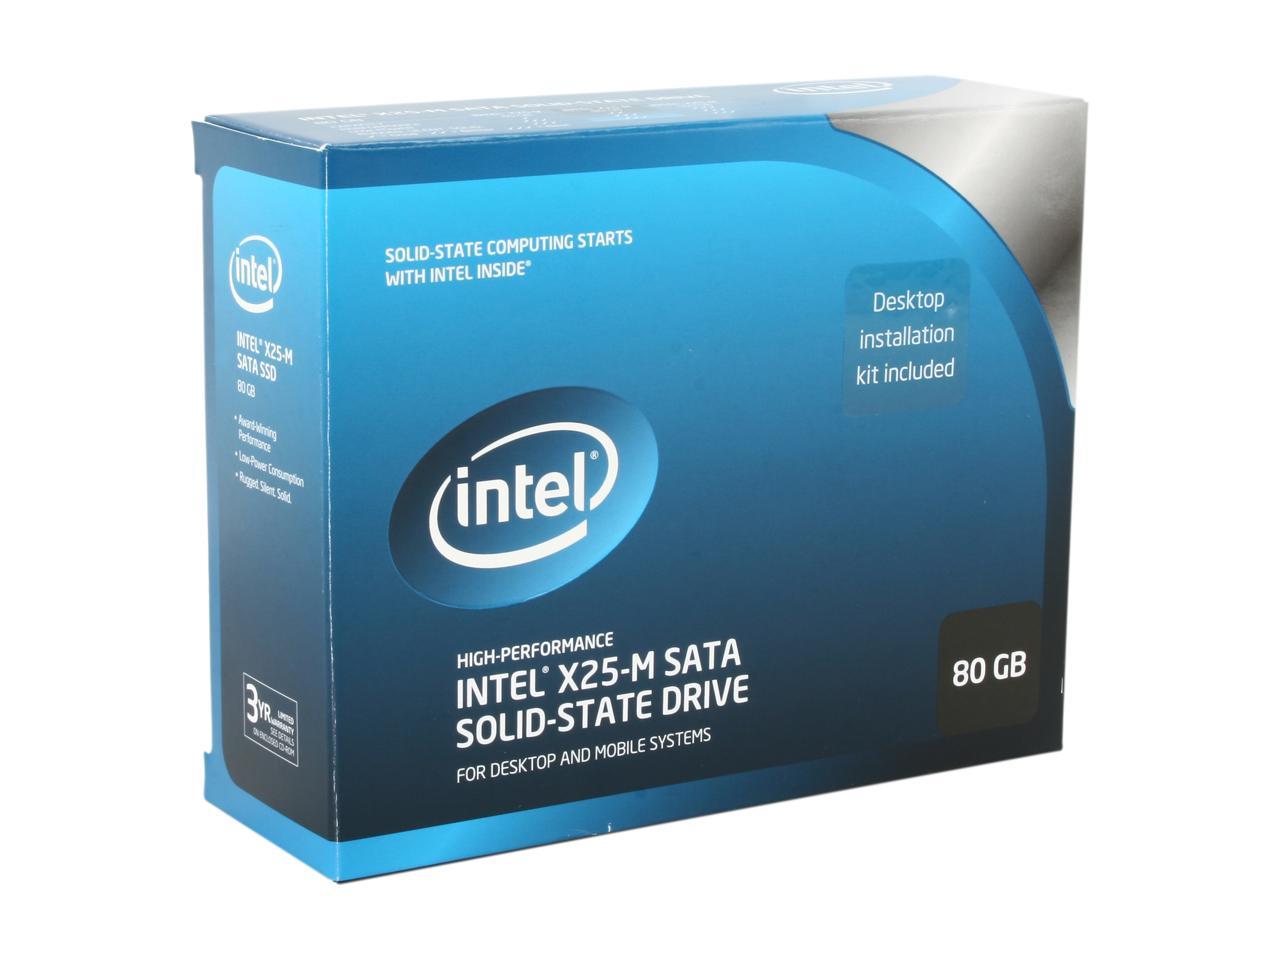 Intel start. Intel SSD-X 25-M-80gb. M2 Intel 120gb. Intel SATA. Жесткий диск Intel x25-m g2 mainstream SATA SSD 160gb.